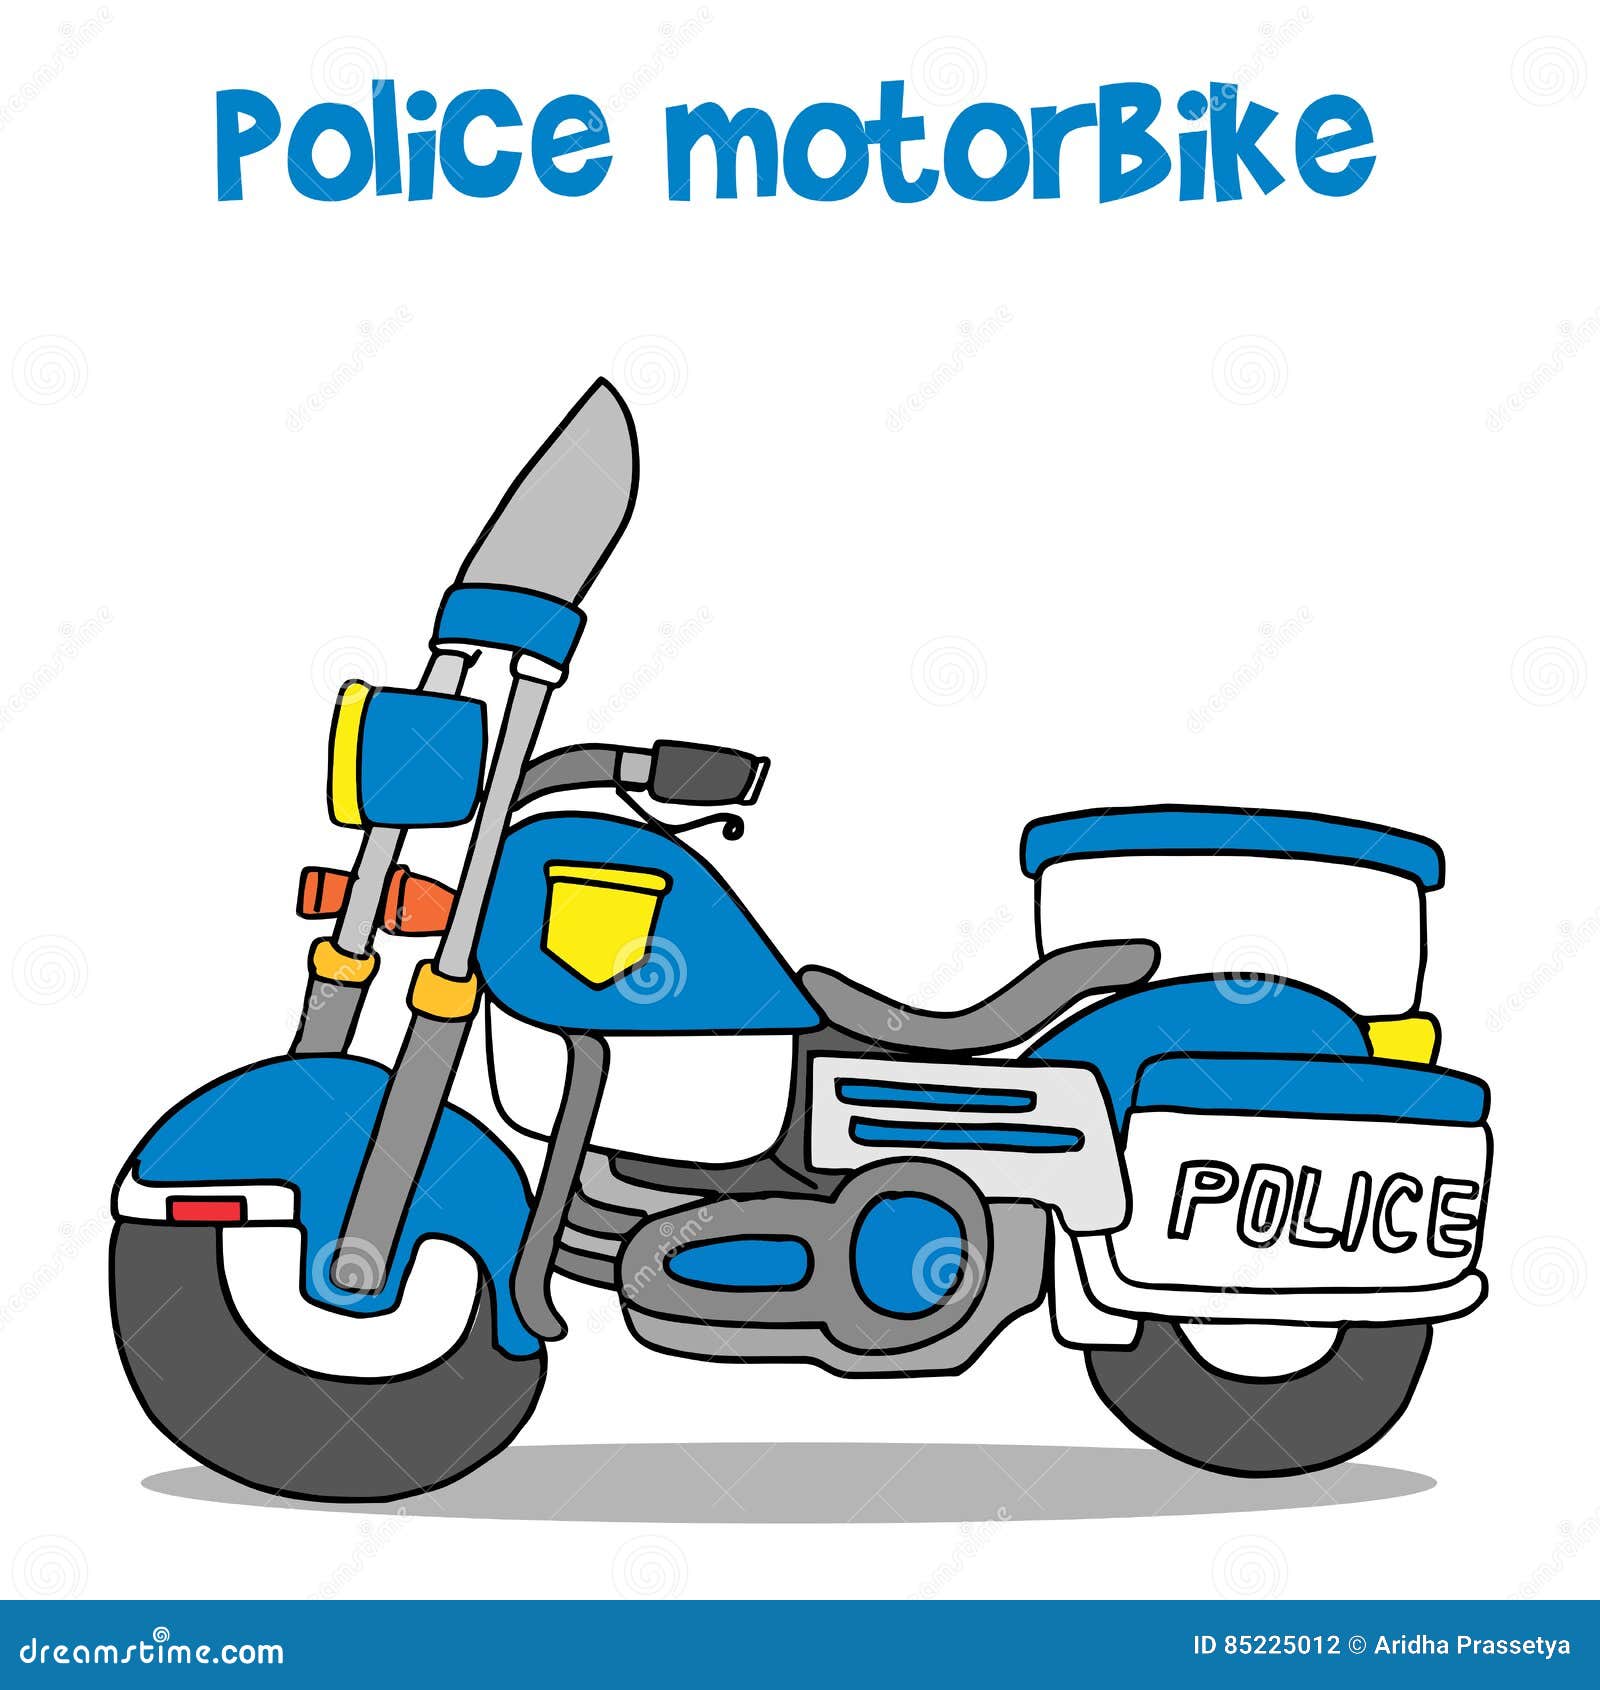 Police Motorbike Stock Illustrations – 609 Police Motorbike Stock  Illustrations, Vectors & Clipart - Dreamstime